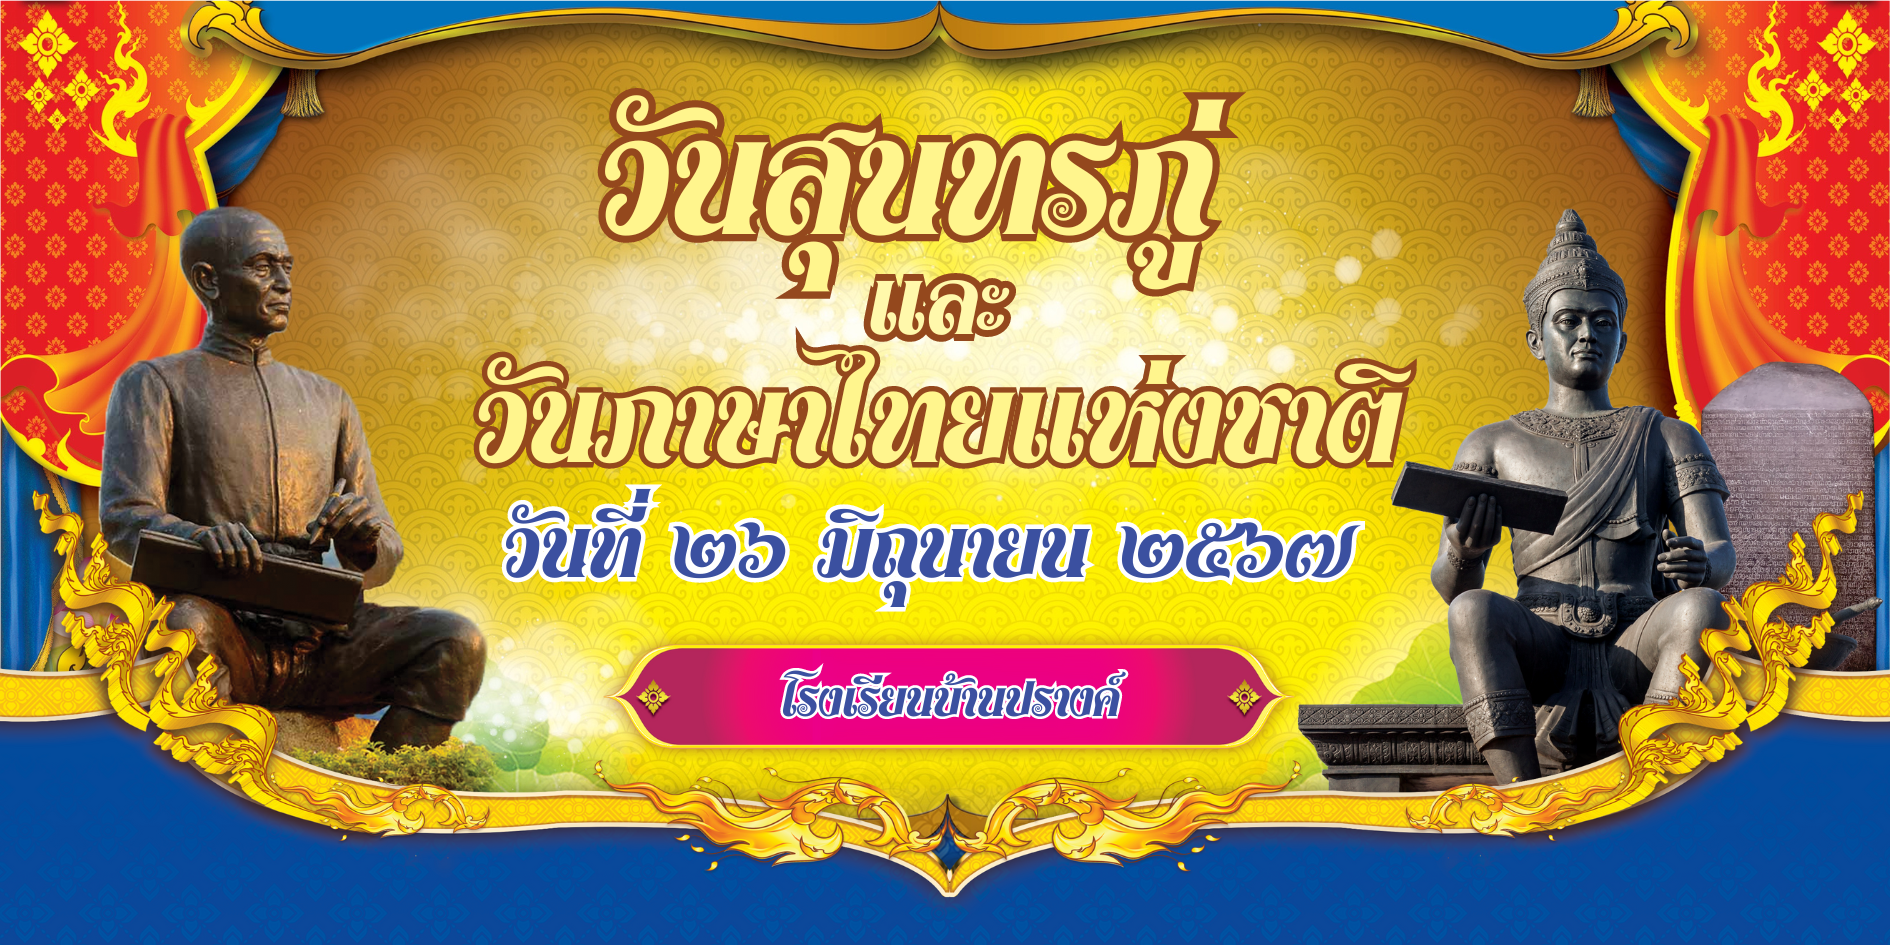  ไวนิล 05 วันภาษาไทยแห่งชาติ.pptx.png